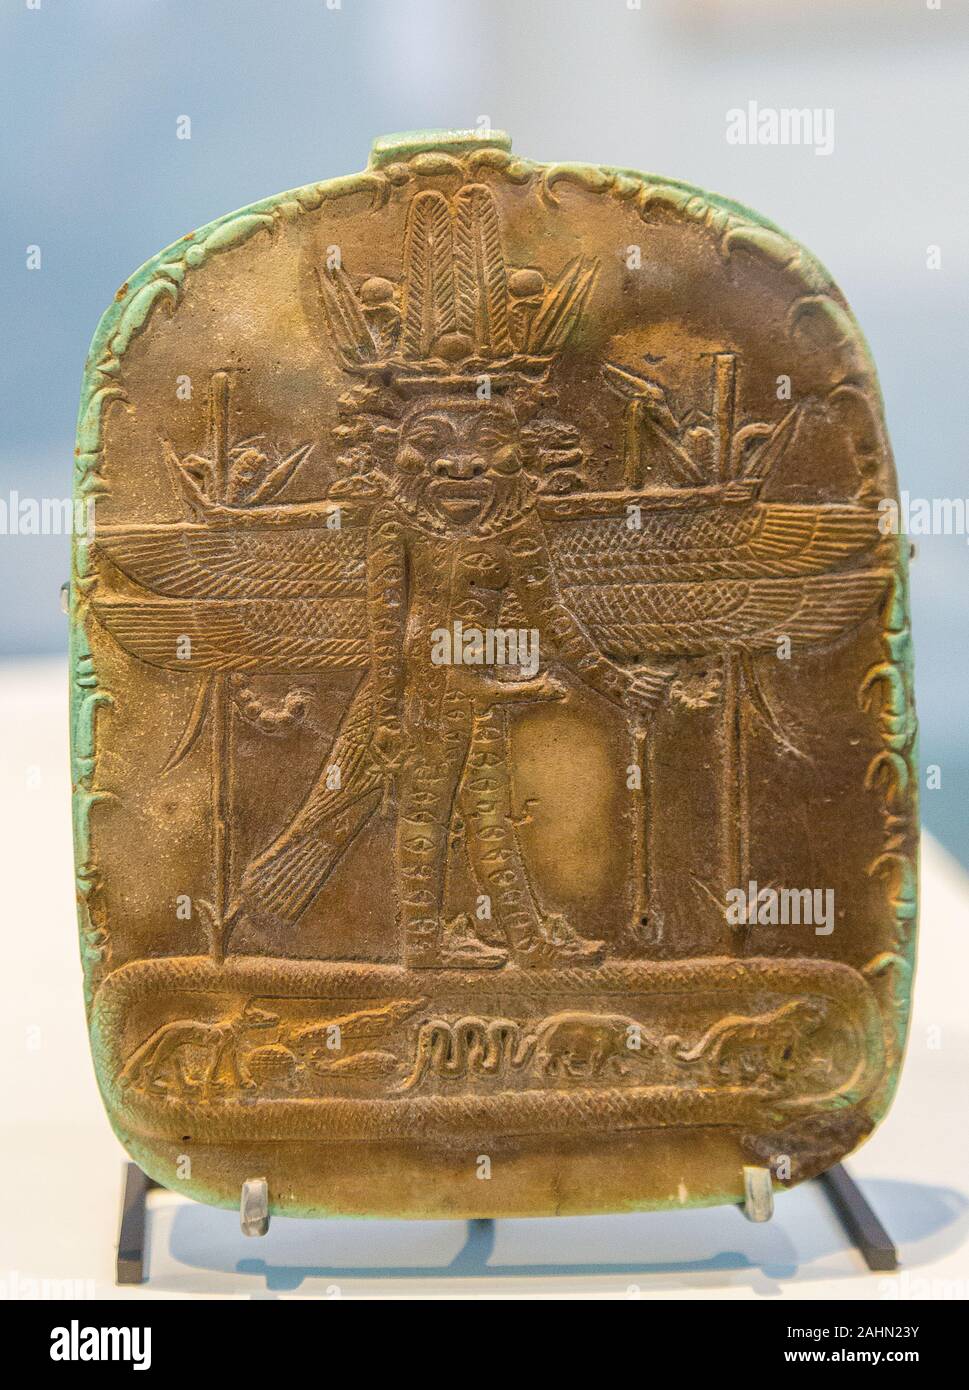 Ausstellung "Das Reich der Tiere im Alten Ägypten", im Jahr 2015 durch das Louvre Museum organisiert. Magische Stele, Horus controlling wilde Tiere. Stockfoto